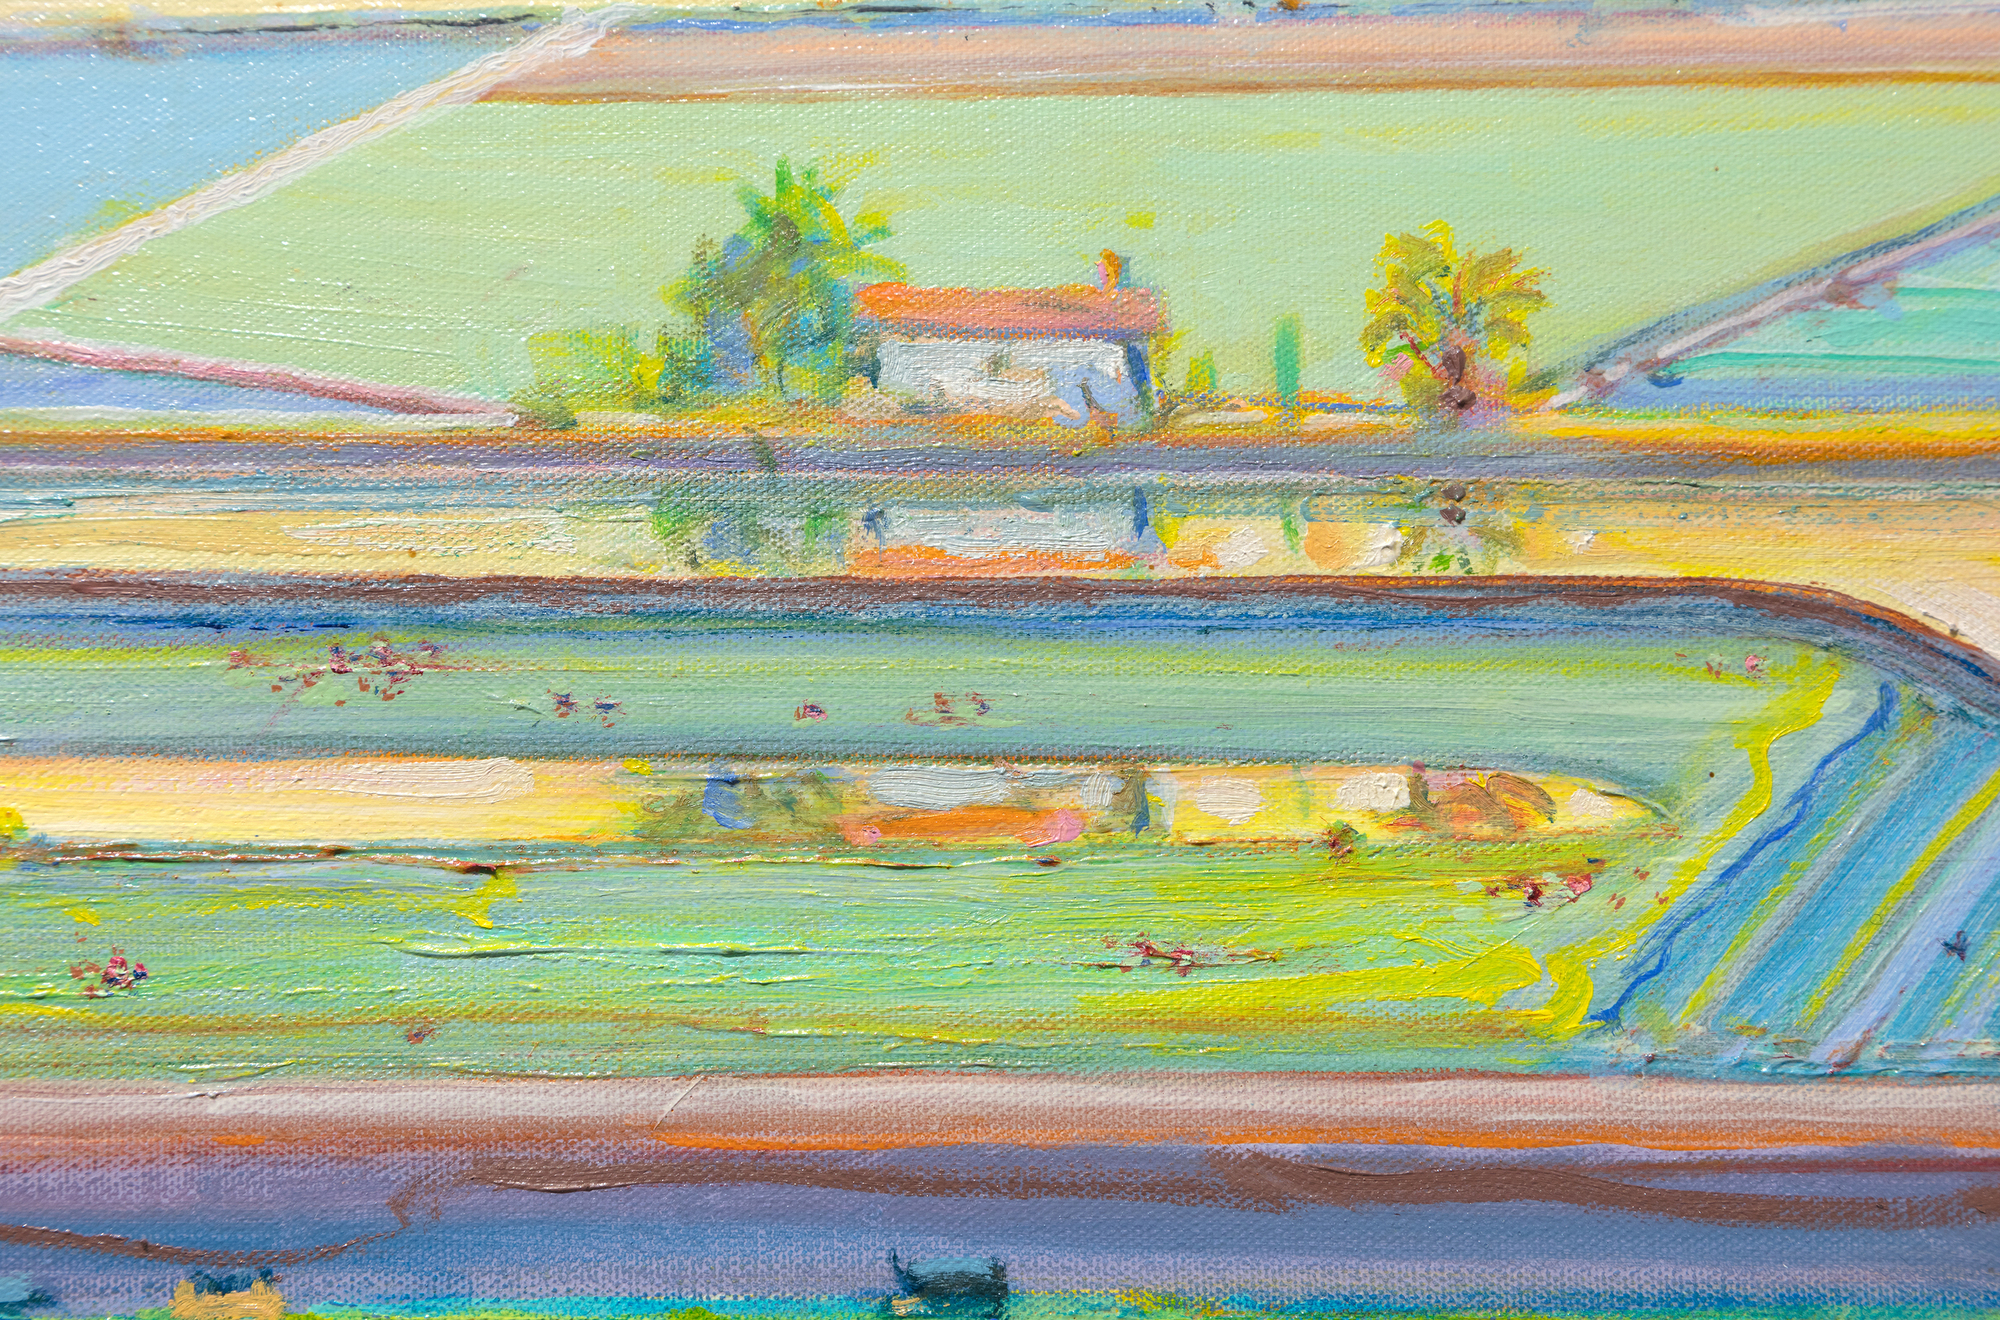 WAYNE THIEBAUD - The Riverhouse - óleo sobre lienzo - 18 x 35 3/4 in.